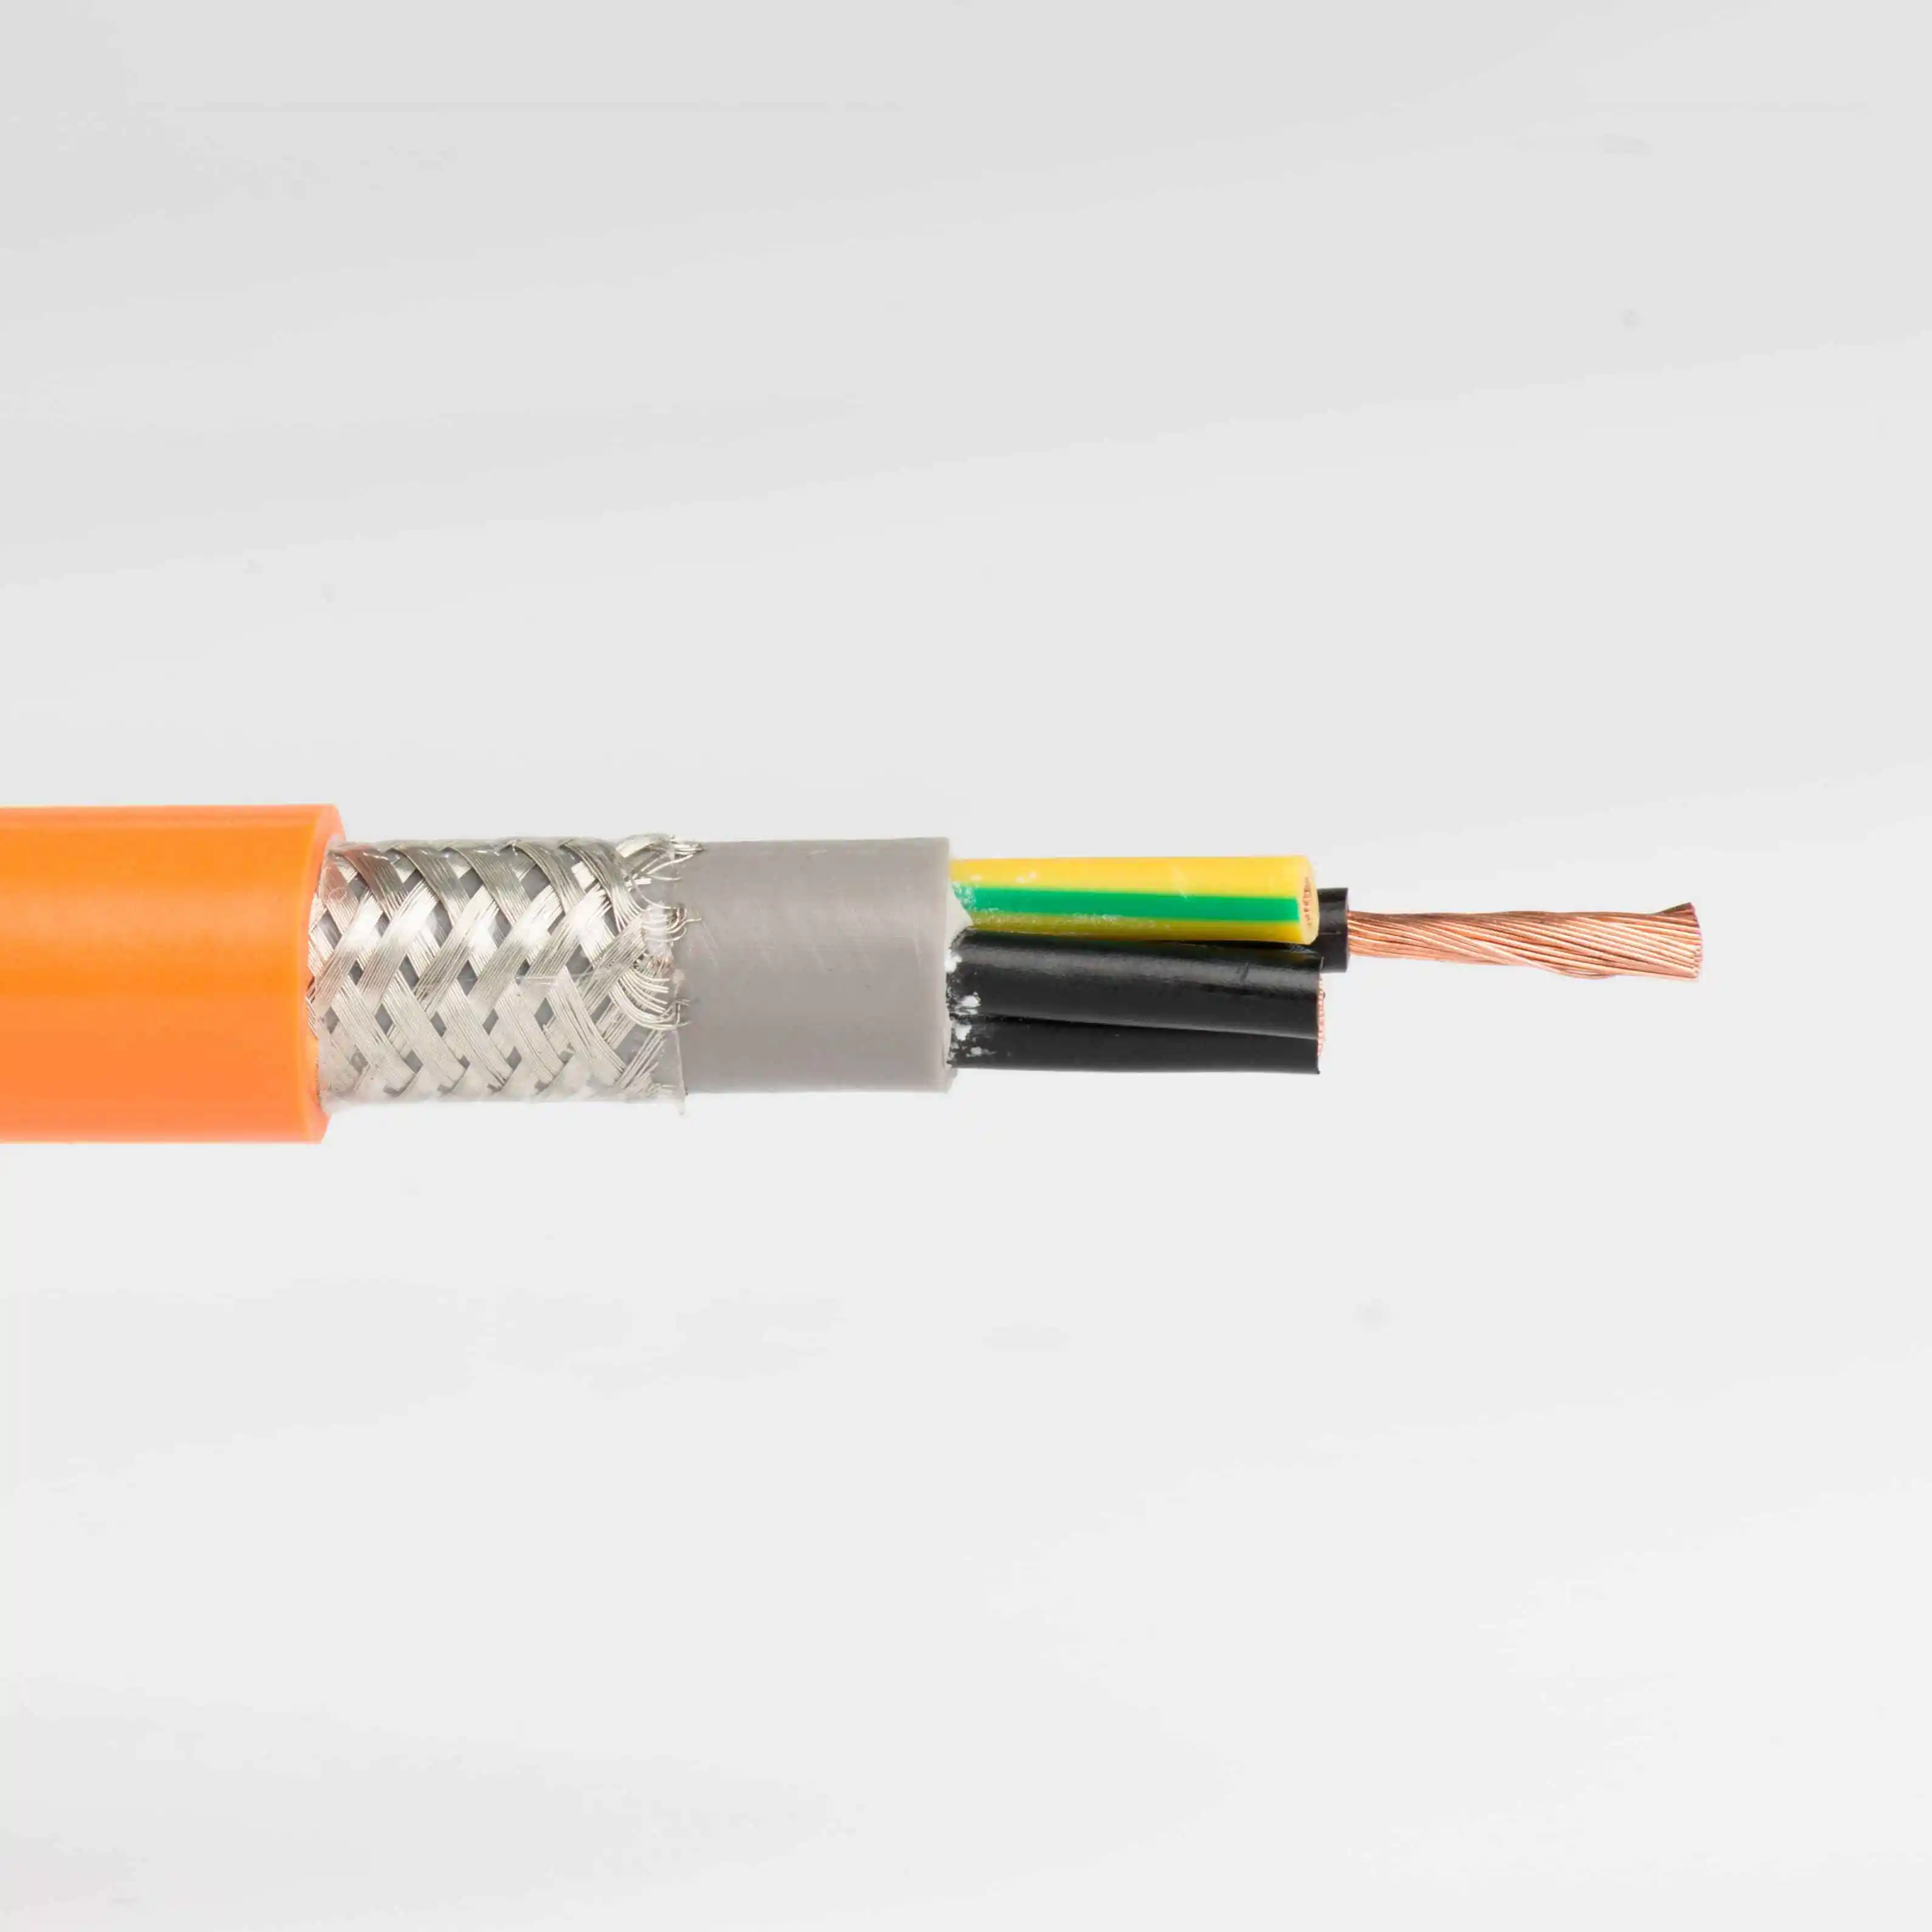 Lskabel esnek kablo yüksek esnek çekme zinciri kablosu Pvc yalıtımlı ve kılıflı yüksek esnek kablo